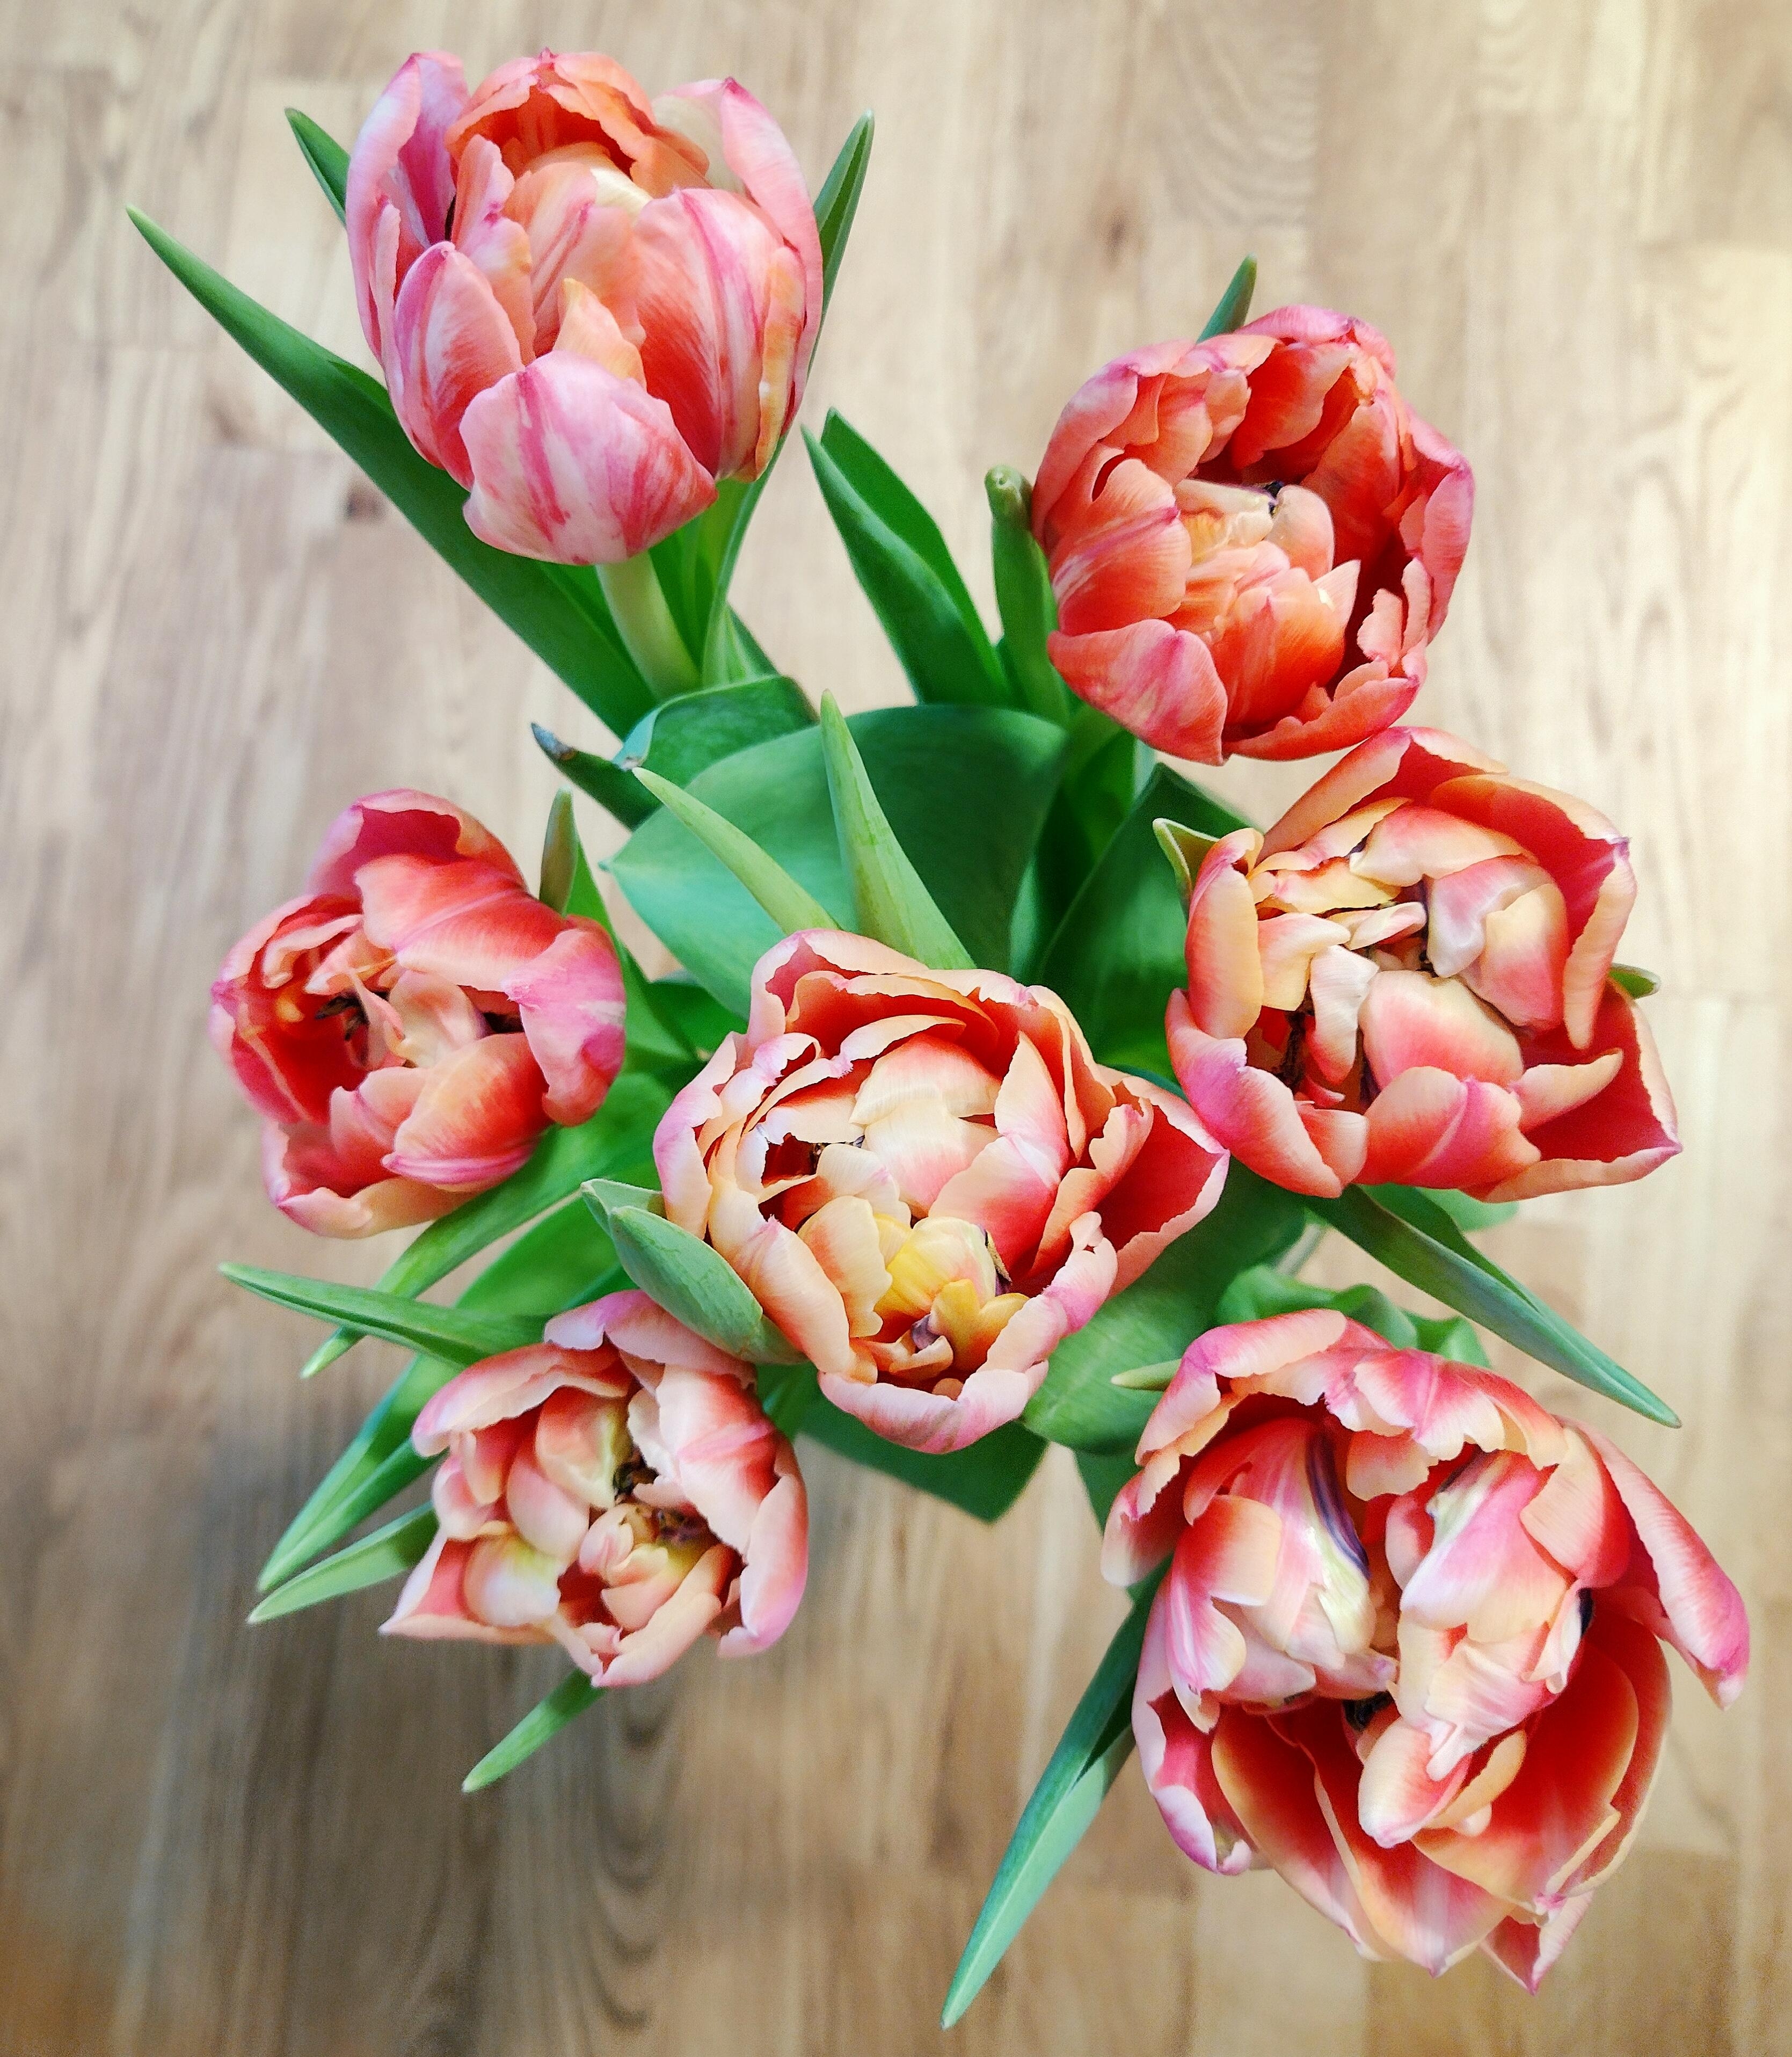 #tulpen #tulpenliebe #details #frischeblumen #blumenliebe